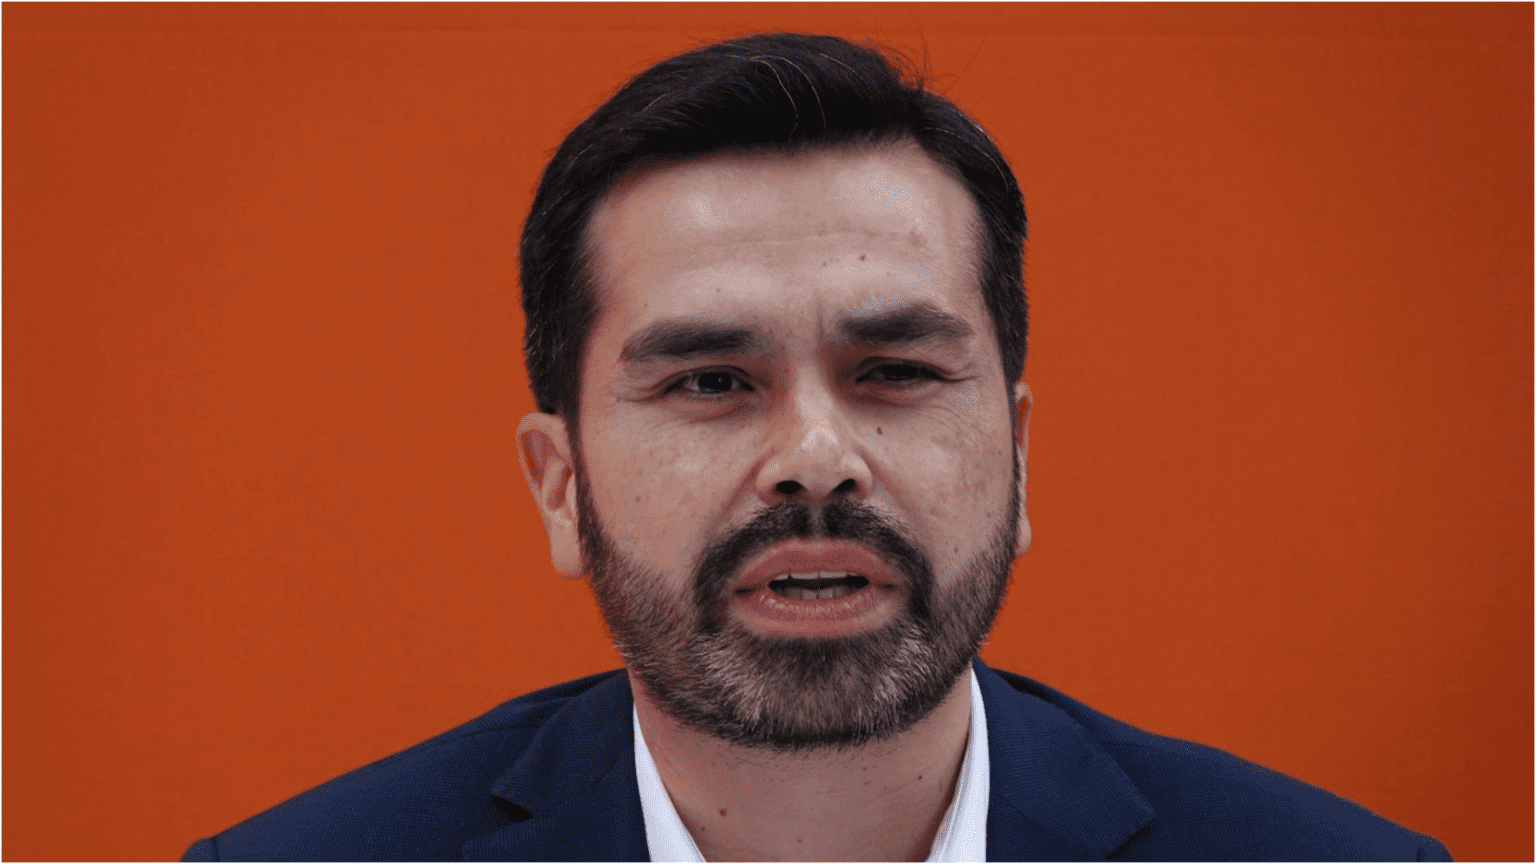 Candidata del PRI, PAN y PRD acusa a Álvarez Máynez de acoso sexual